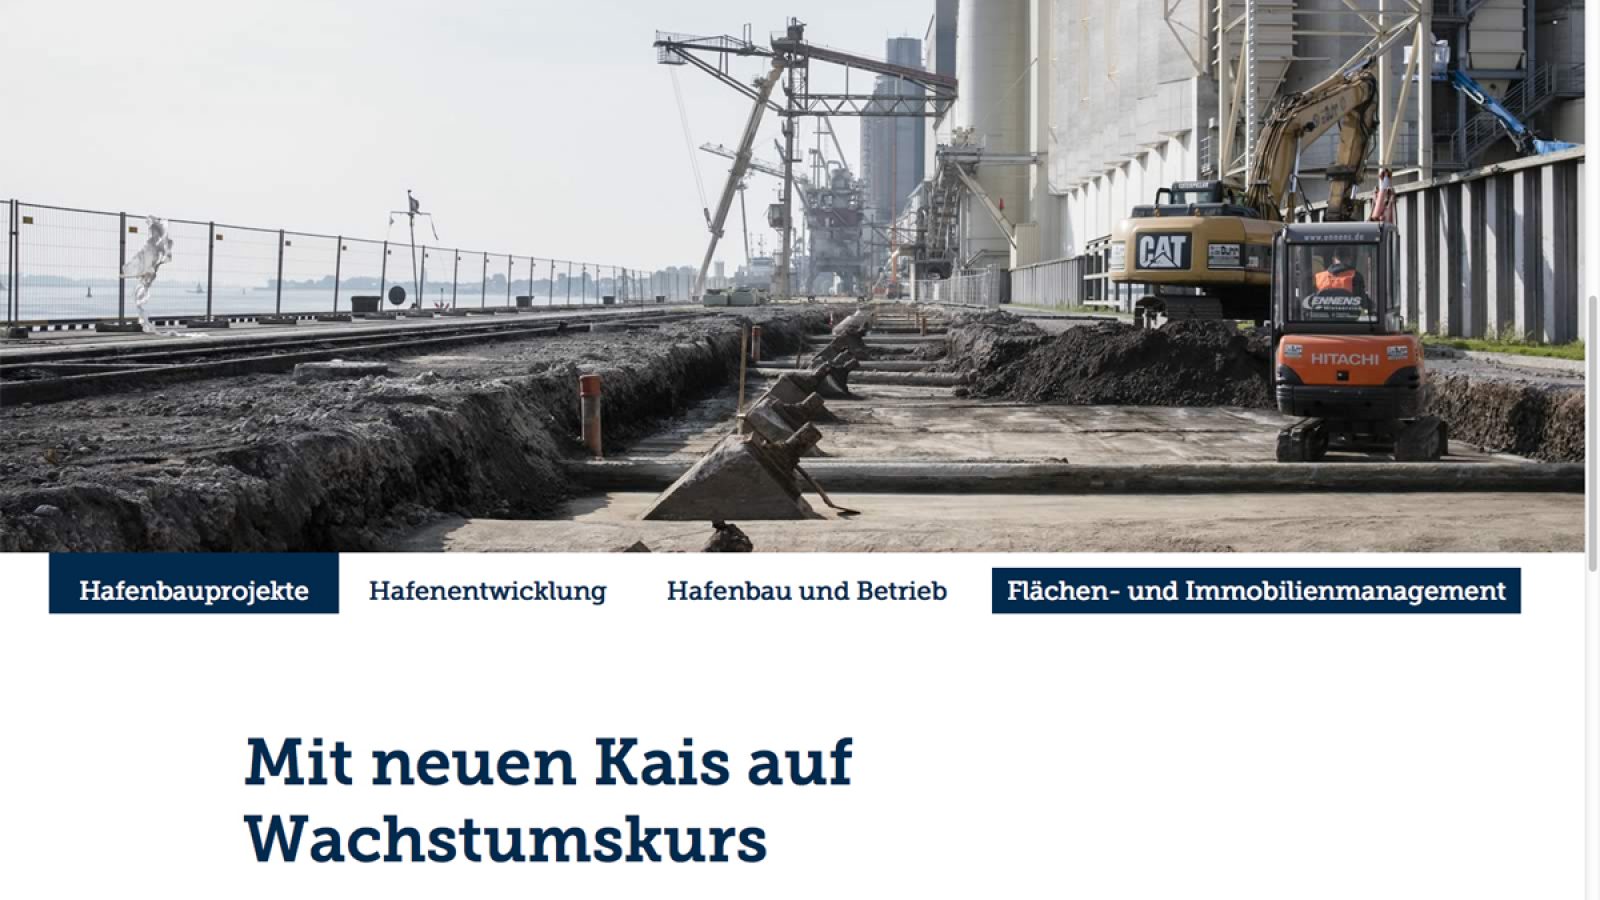 Hafen, Schiffe, Terminals: Christian O. Bruch fotografierte für Niedersachsen Ports.